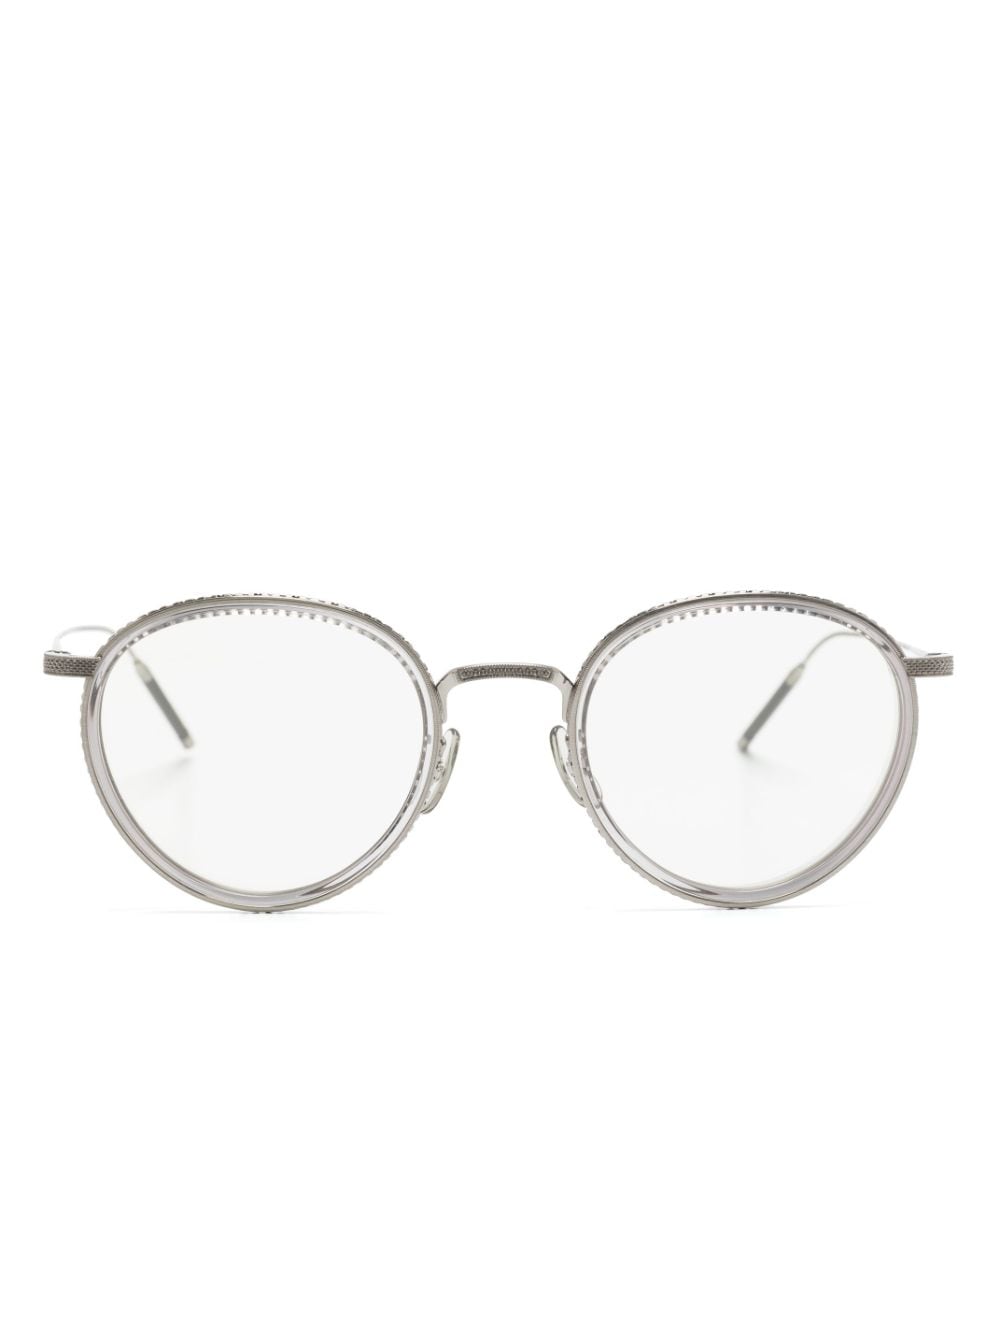 Oliver Peoples TK-8 round-frame glasses - Silver von Oliver Peoples